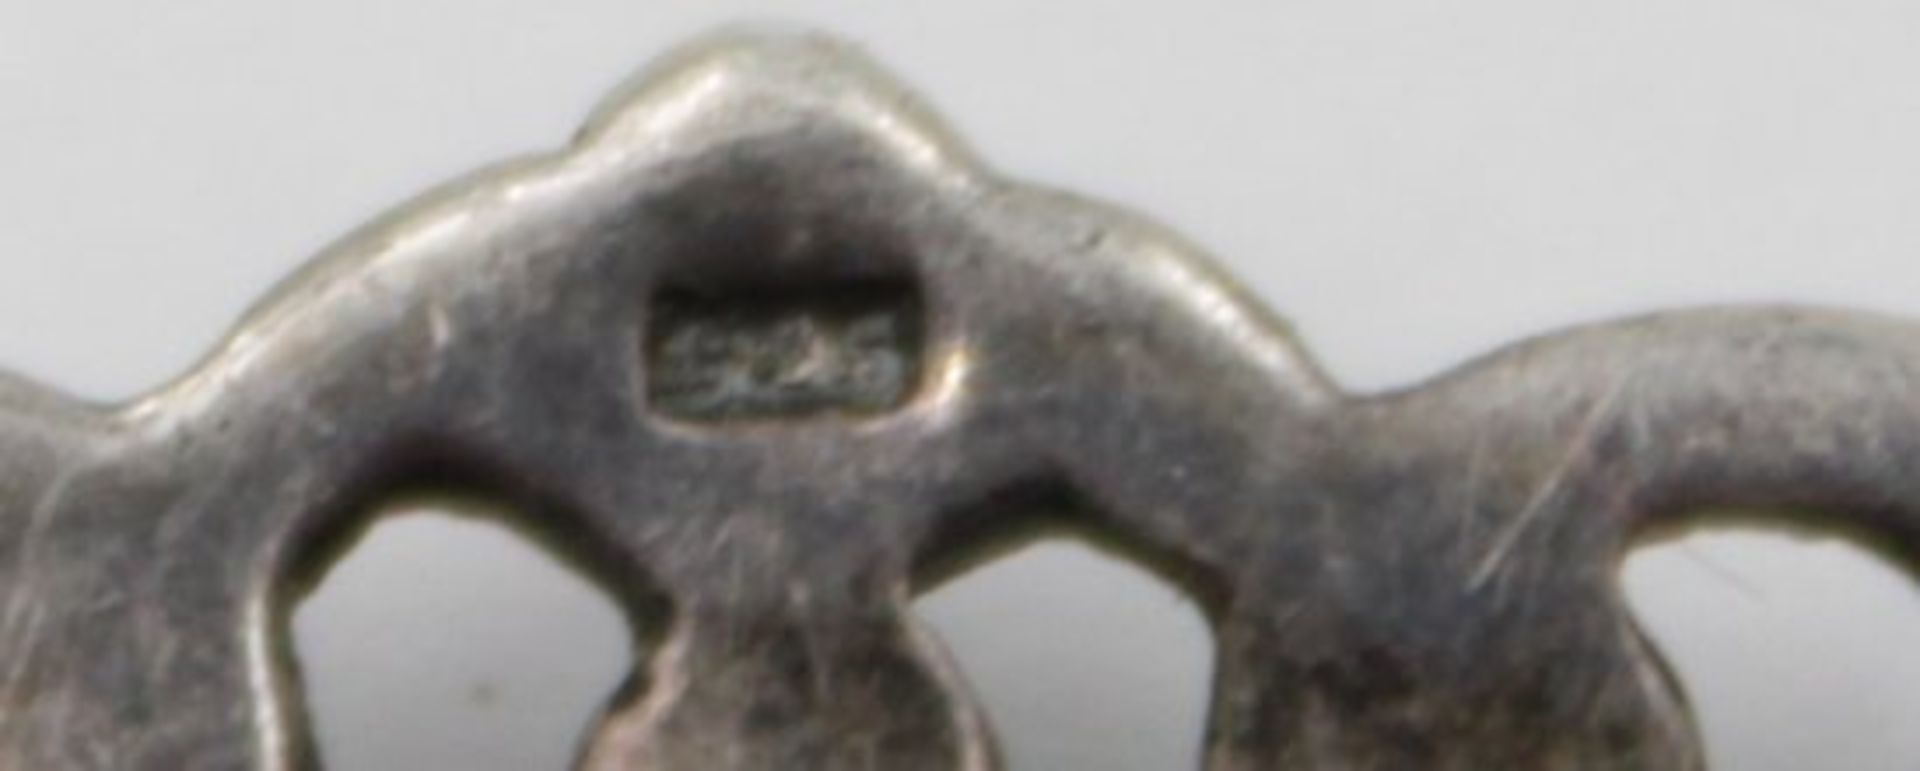 925er Silber-Brosche, Onyx und Markasiten, wohl 30/40er Jahre, 8,5gr., 4,8cm. - Bild 4 aus 4